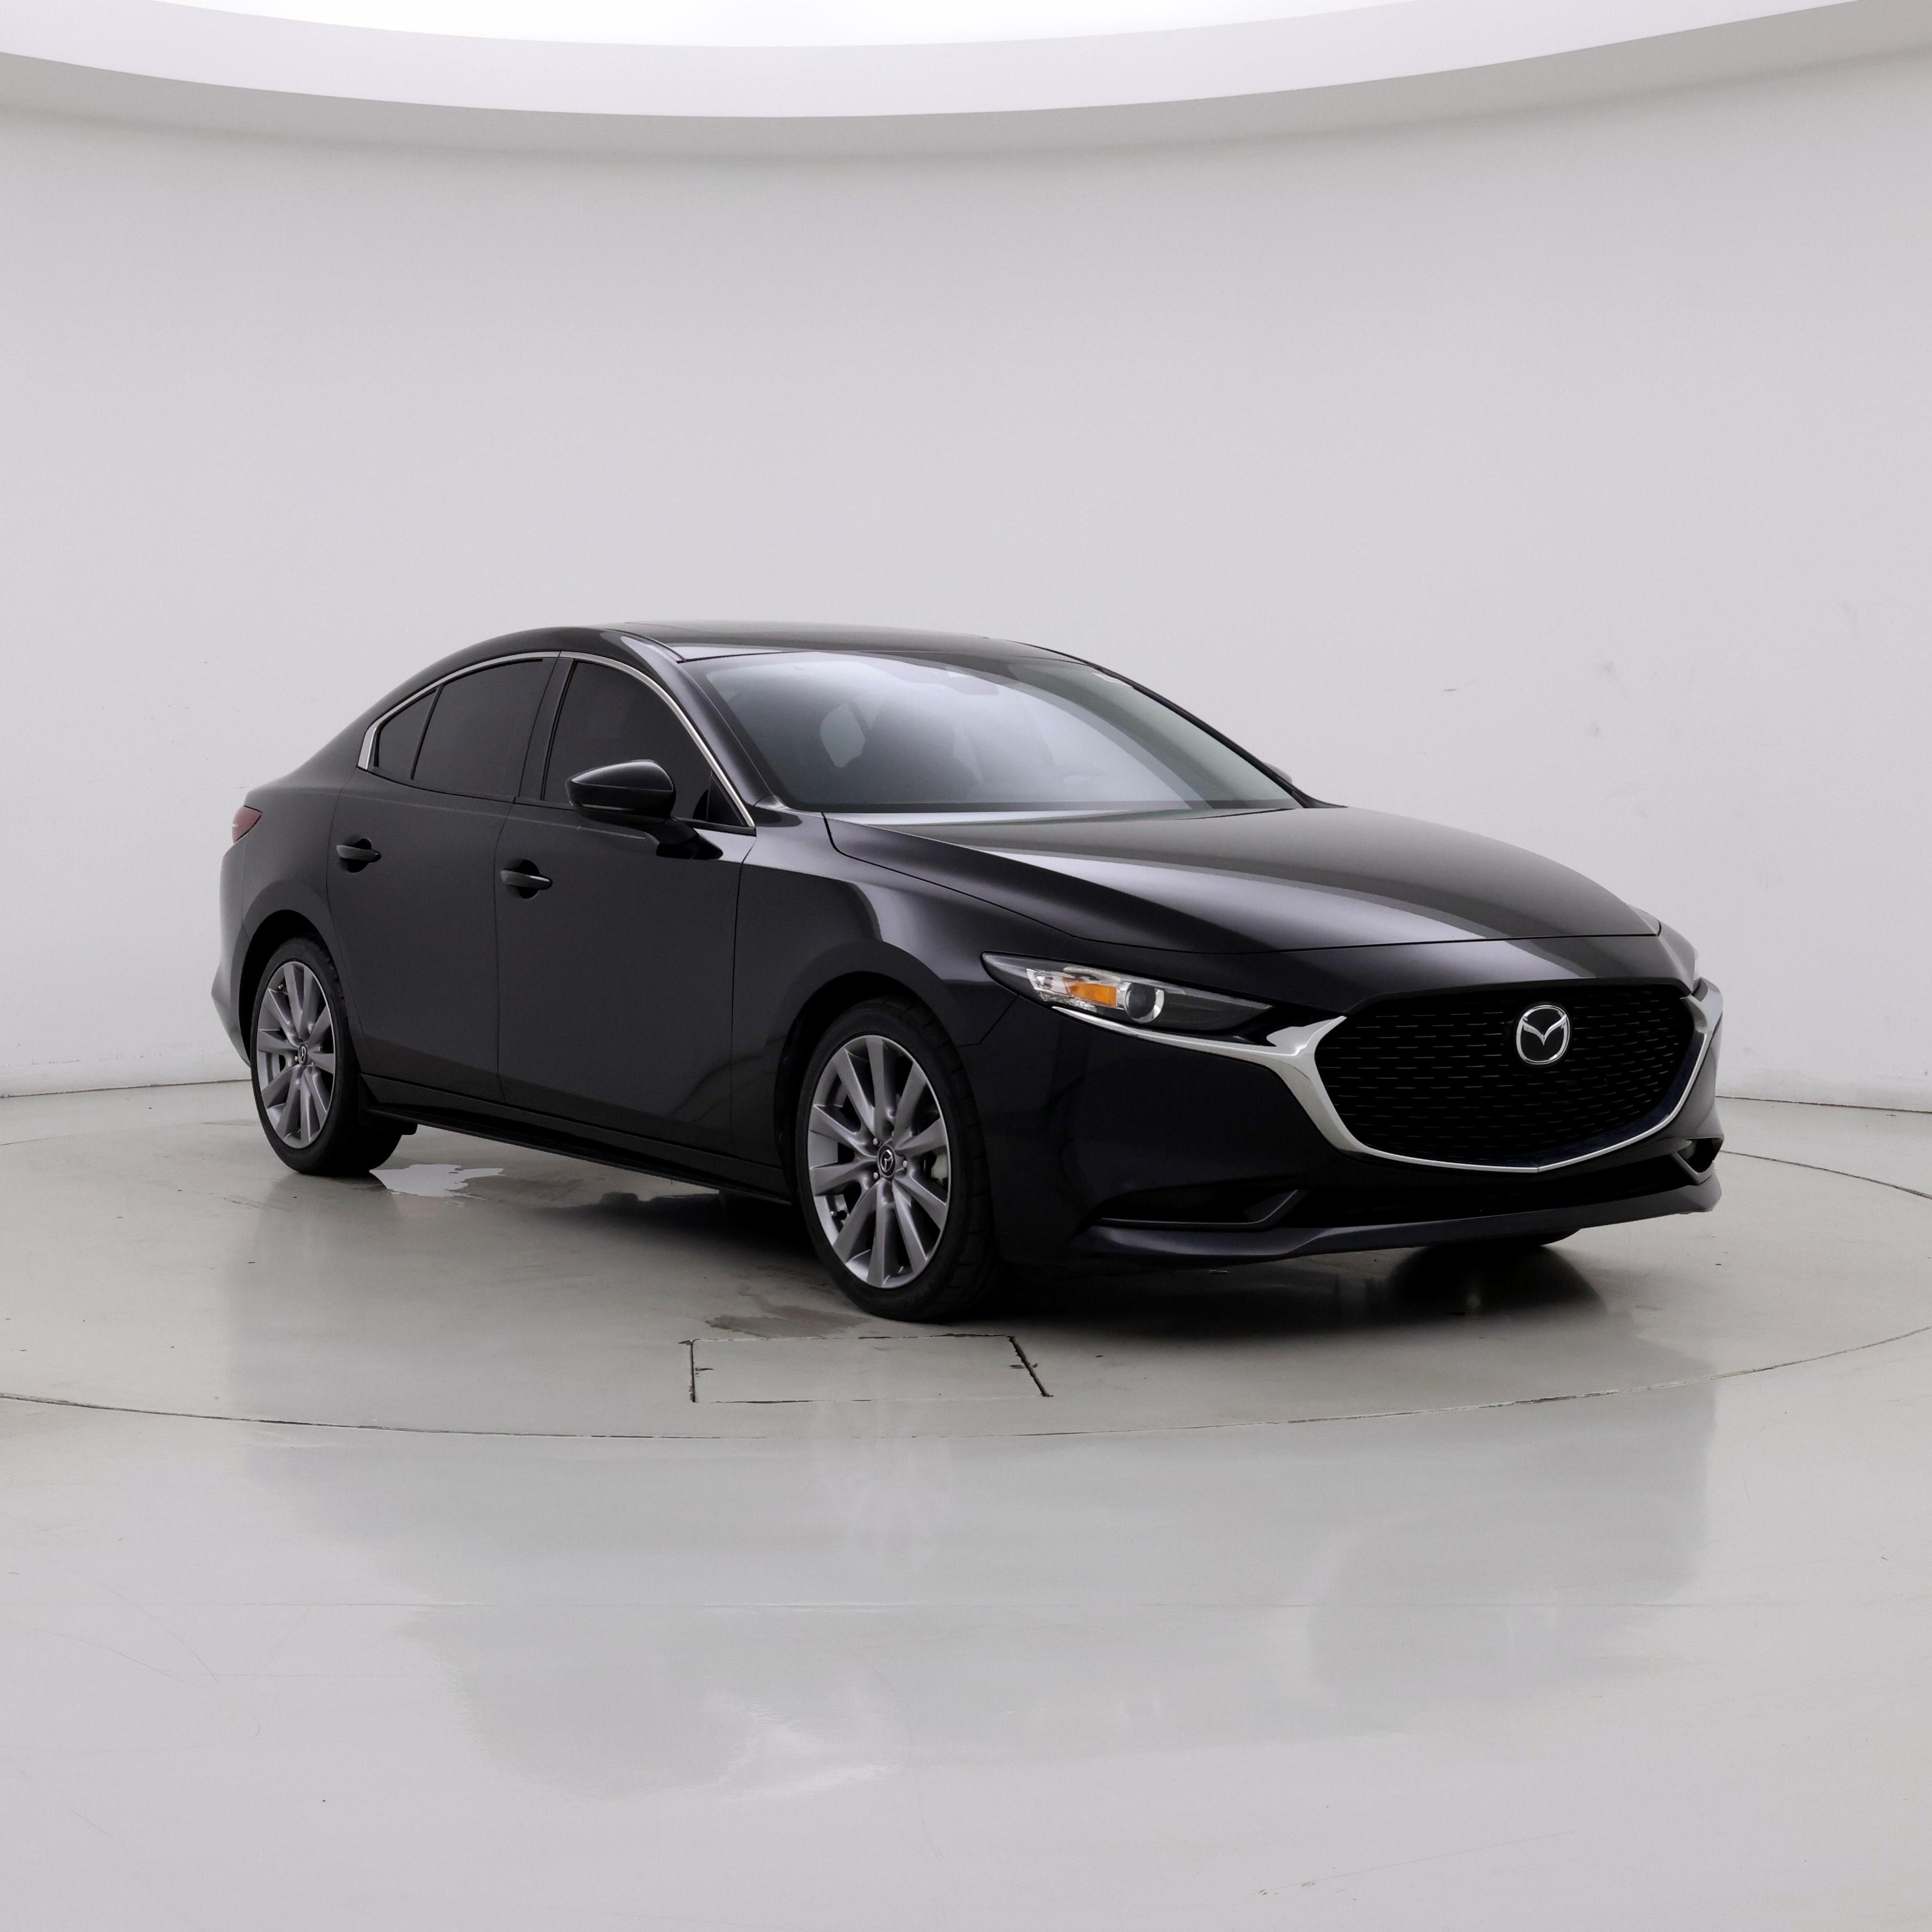 2021 Mazda MAZDA3 Preferred Sedan FWD